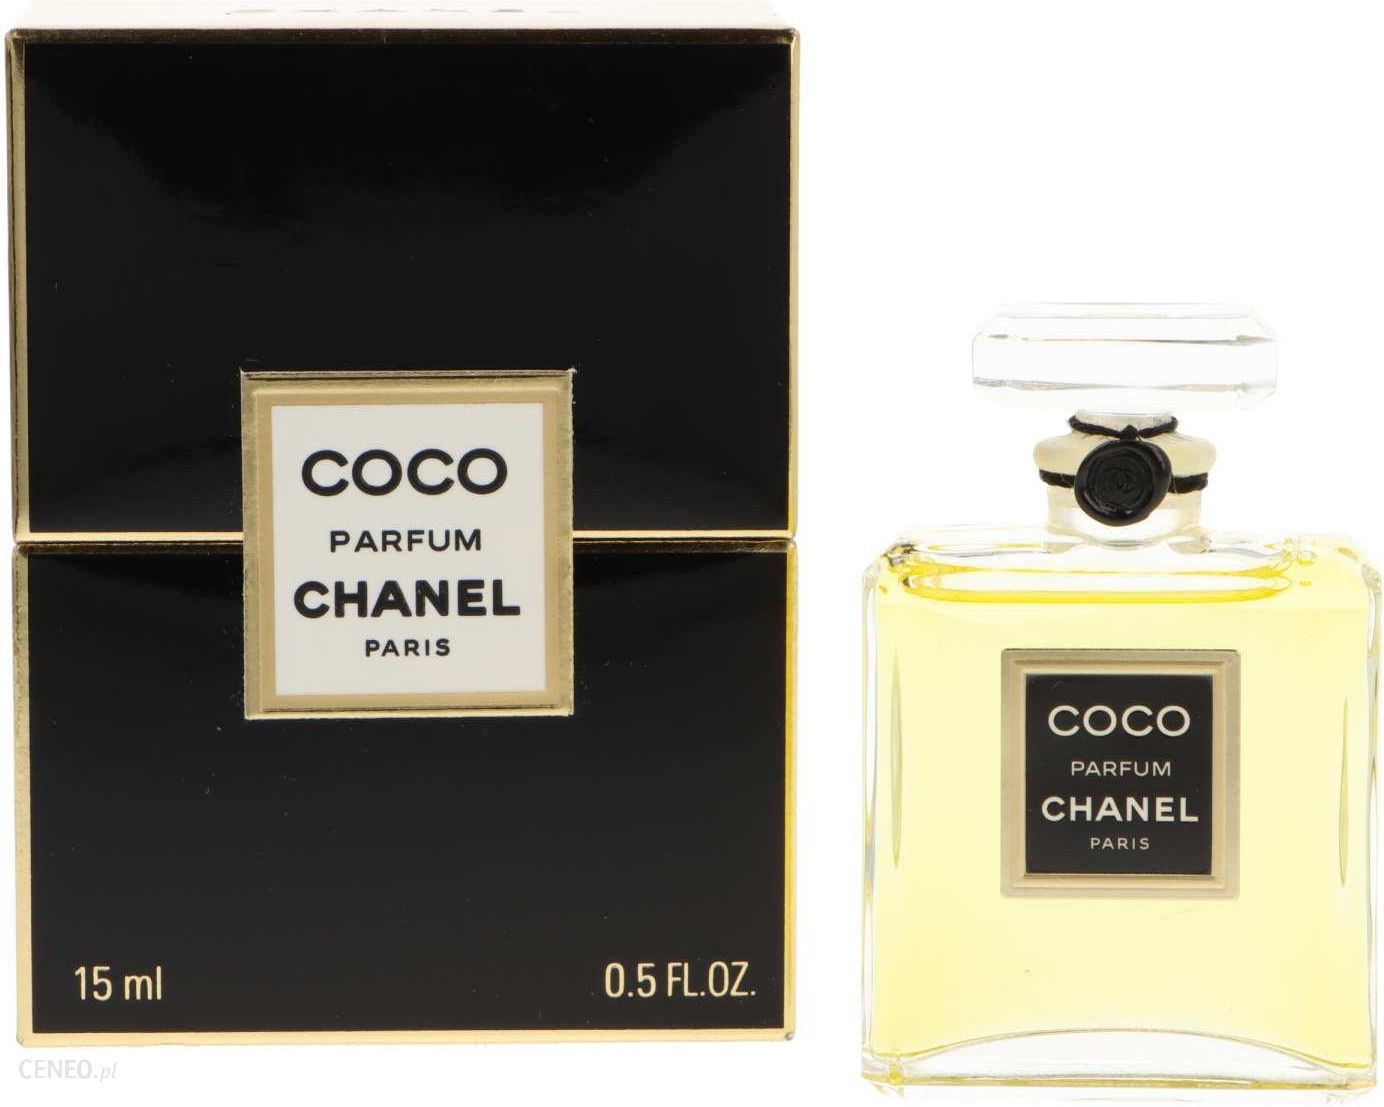 CHANEL Coco perfumy damskie  woda perfumowana 60ml wkład  60ml wkład   porównanie cen